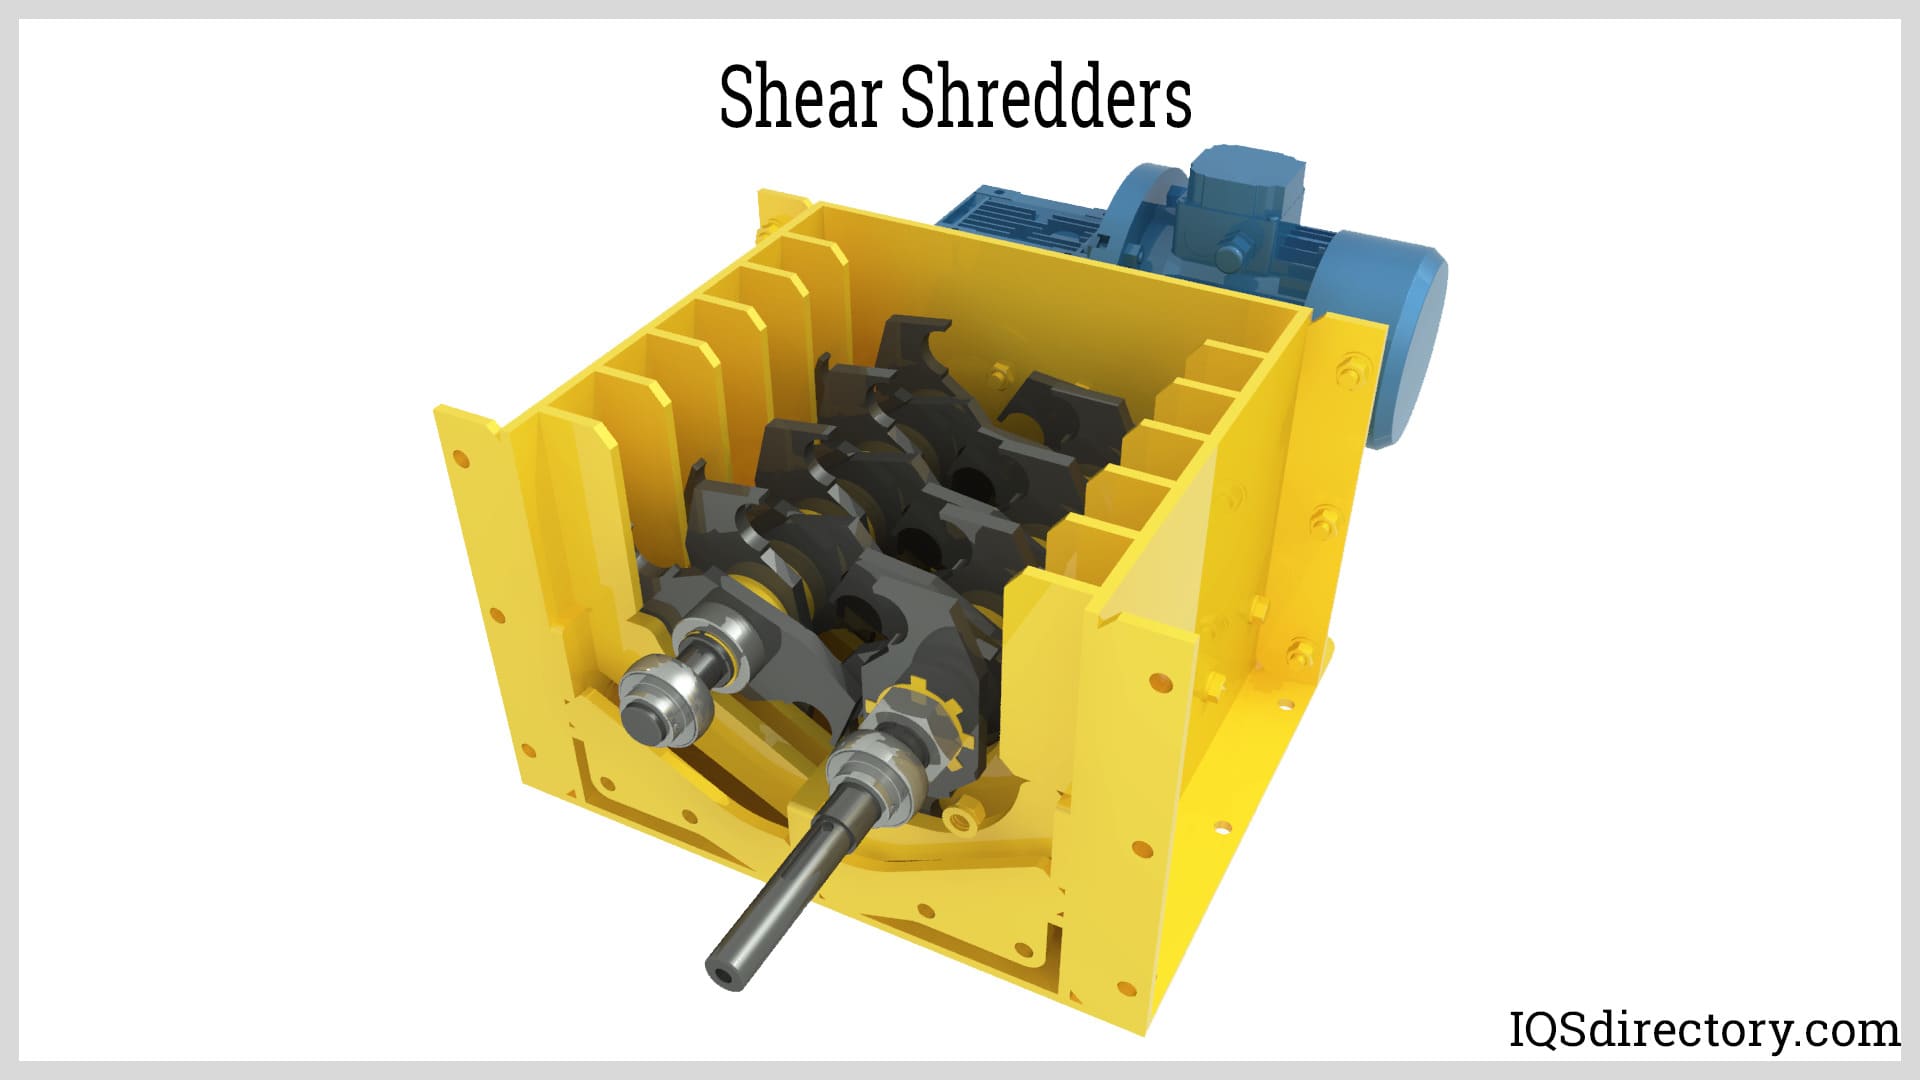 https://www.industrial-shredders.com/wp-content/uploads/2023/04/shear-shredders.jpg